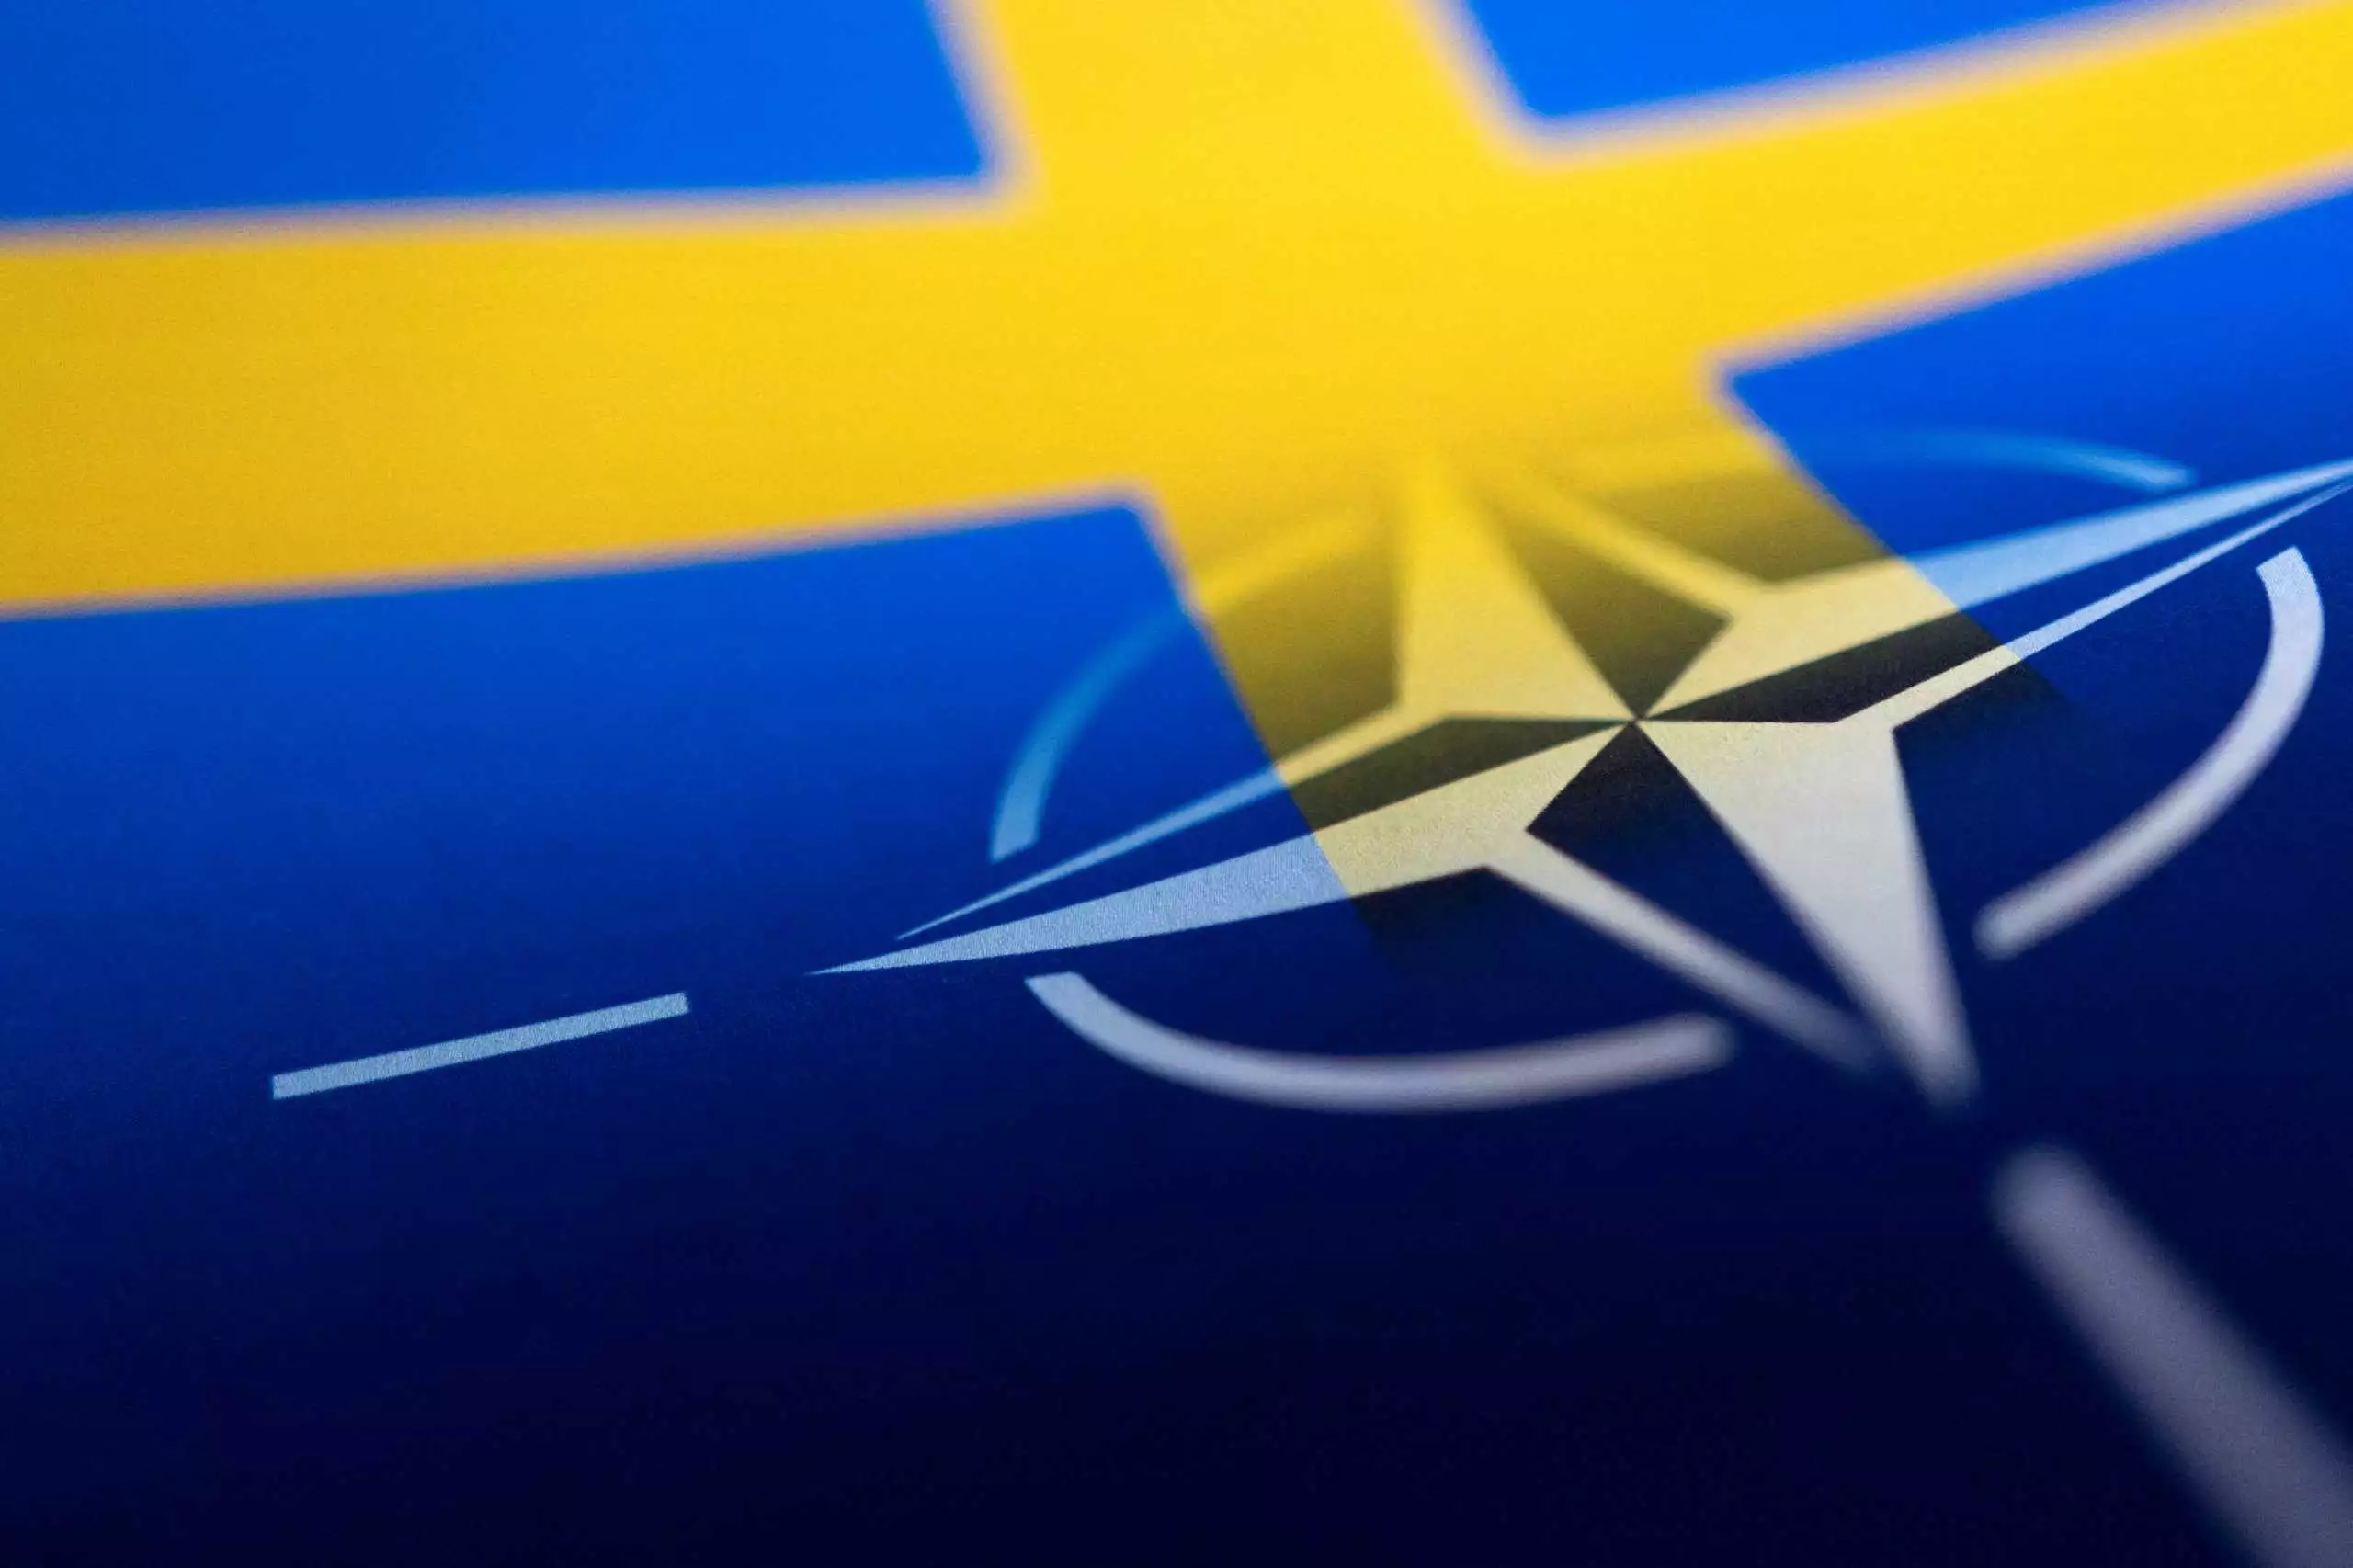 Η Σουηδία περιμένει την Ουγγαρία για να μπει στο ΝΑΤΟ μετά το «ναι» της Τουρκίας